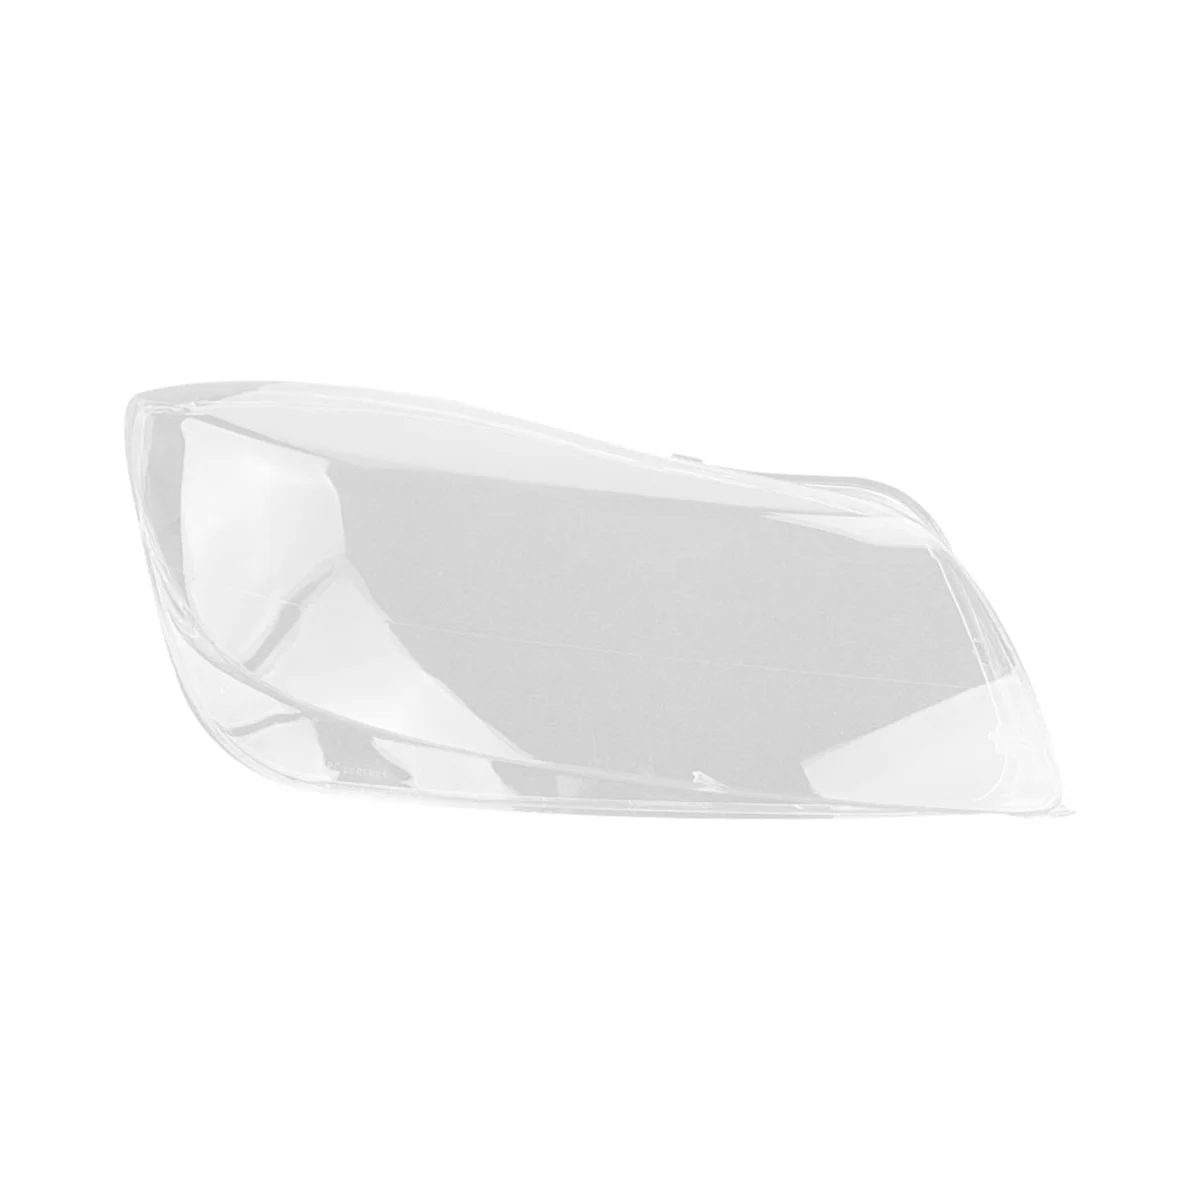 

Чехол для правой фары автомобиля, прозрачная крышка для объектива, чехол для фары для Buick Opel Insignia OPC 2009-2012